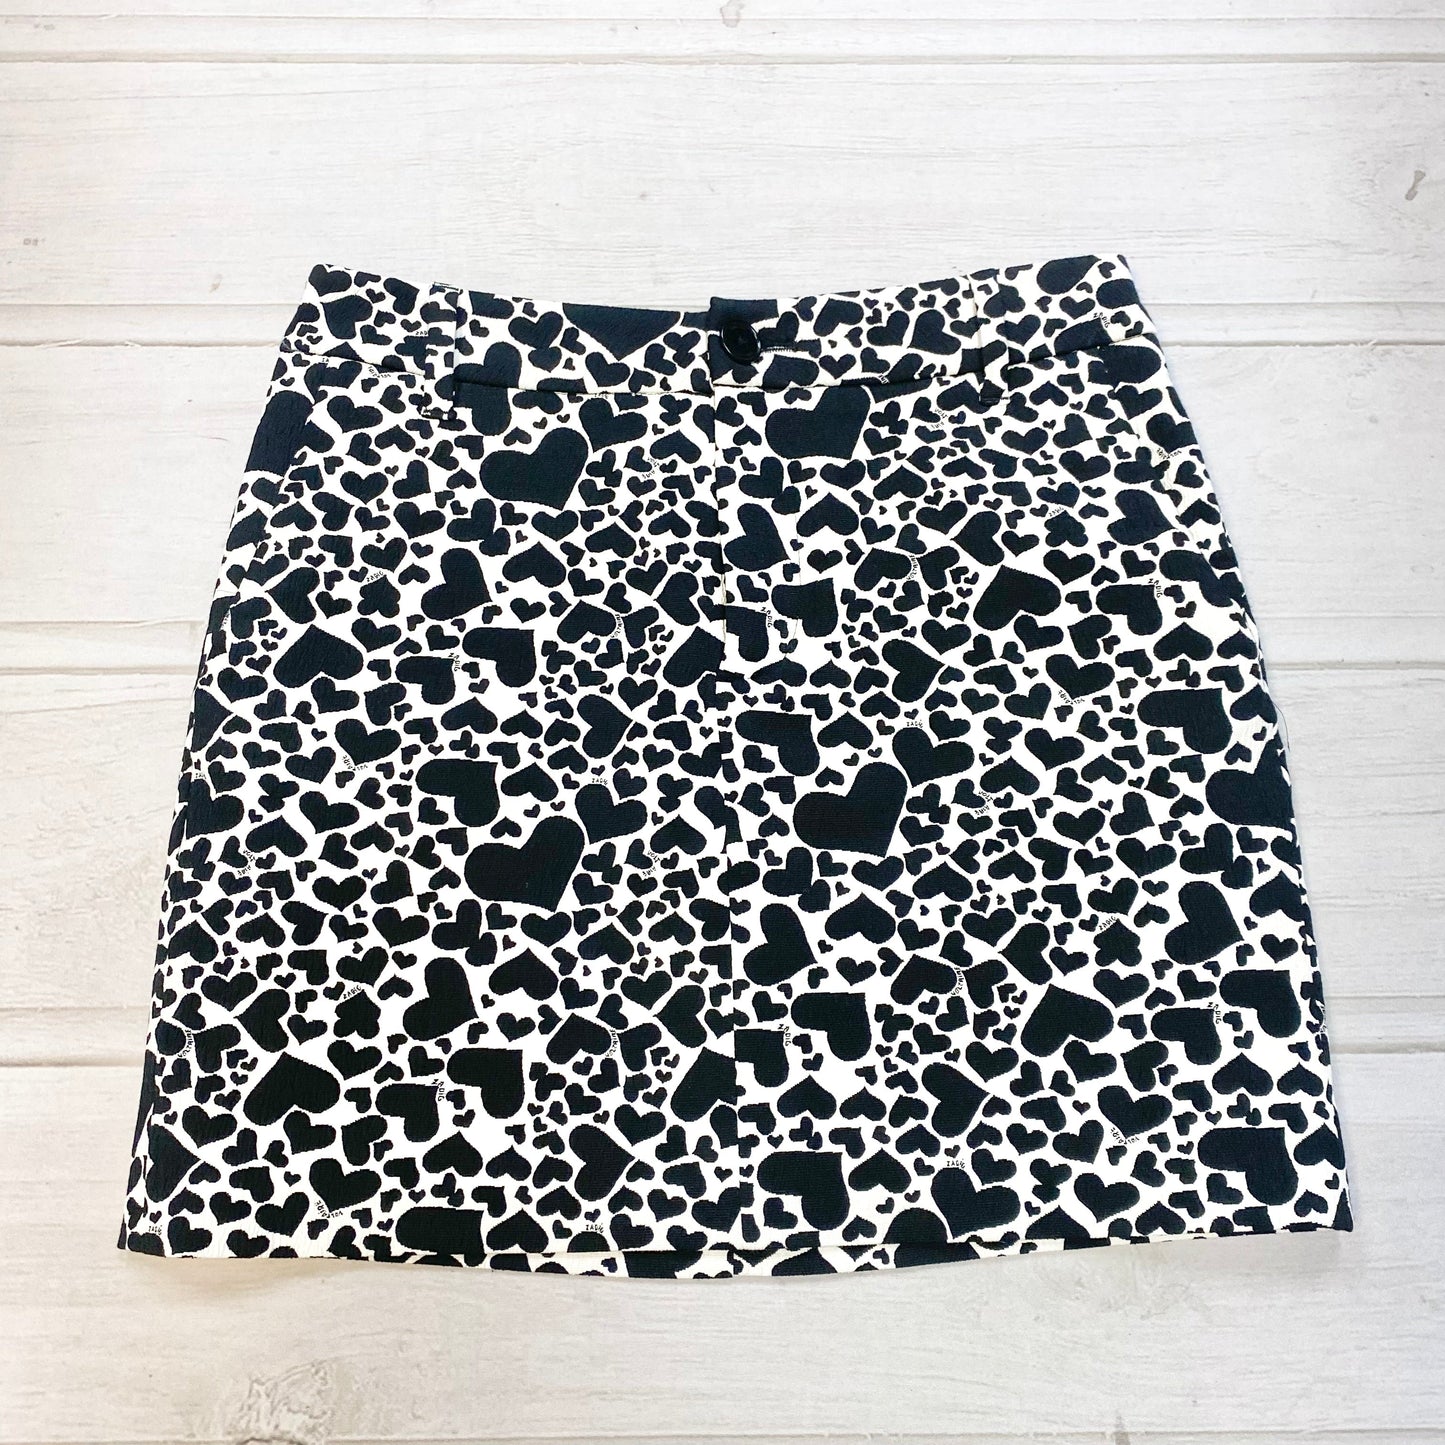 Shorts Designer By Alice + Olivia  Size: 2